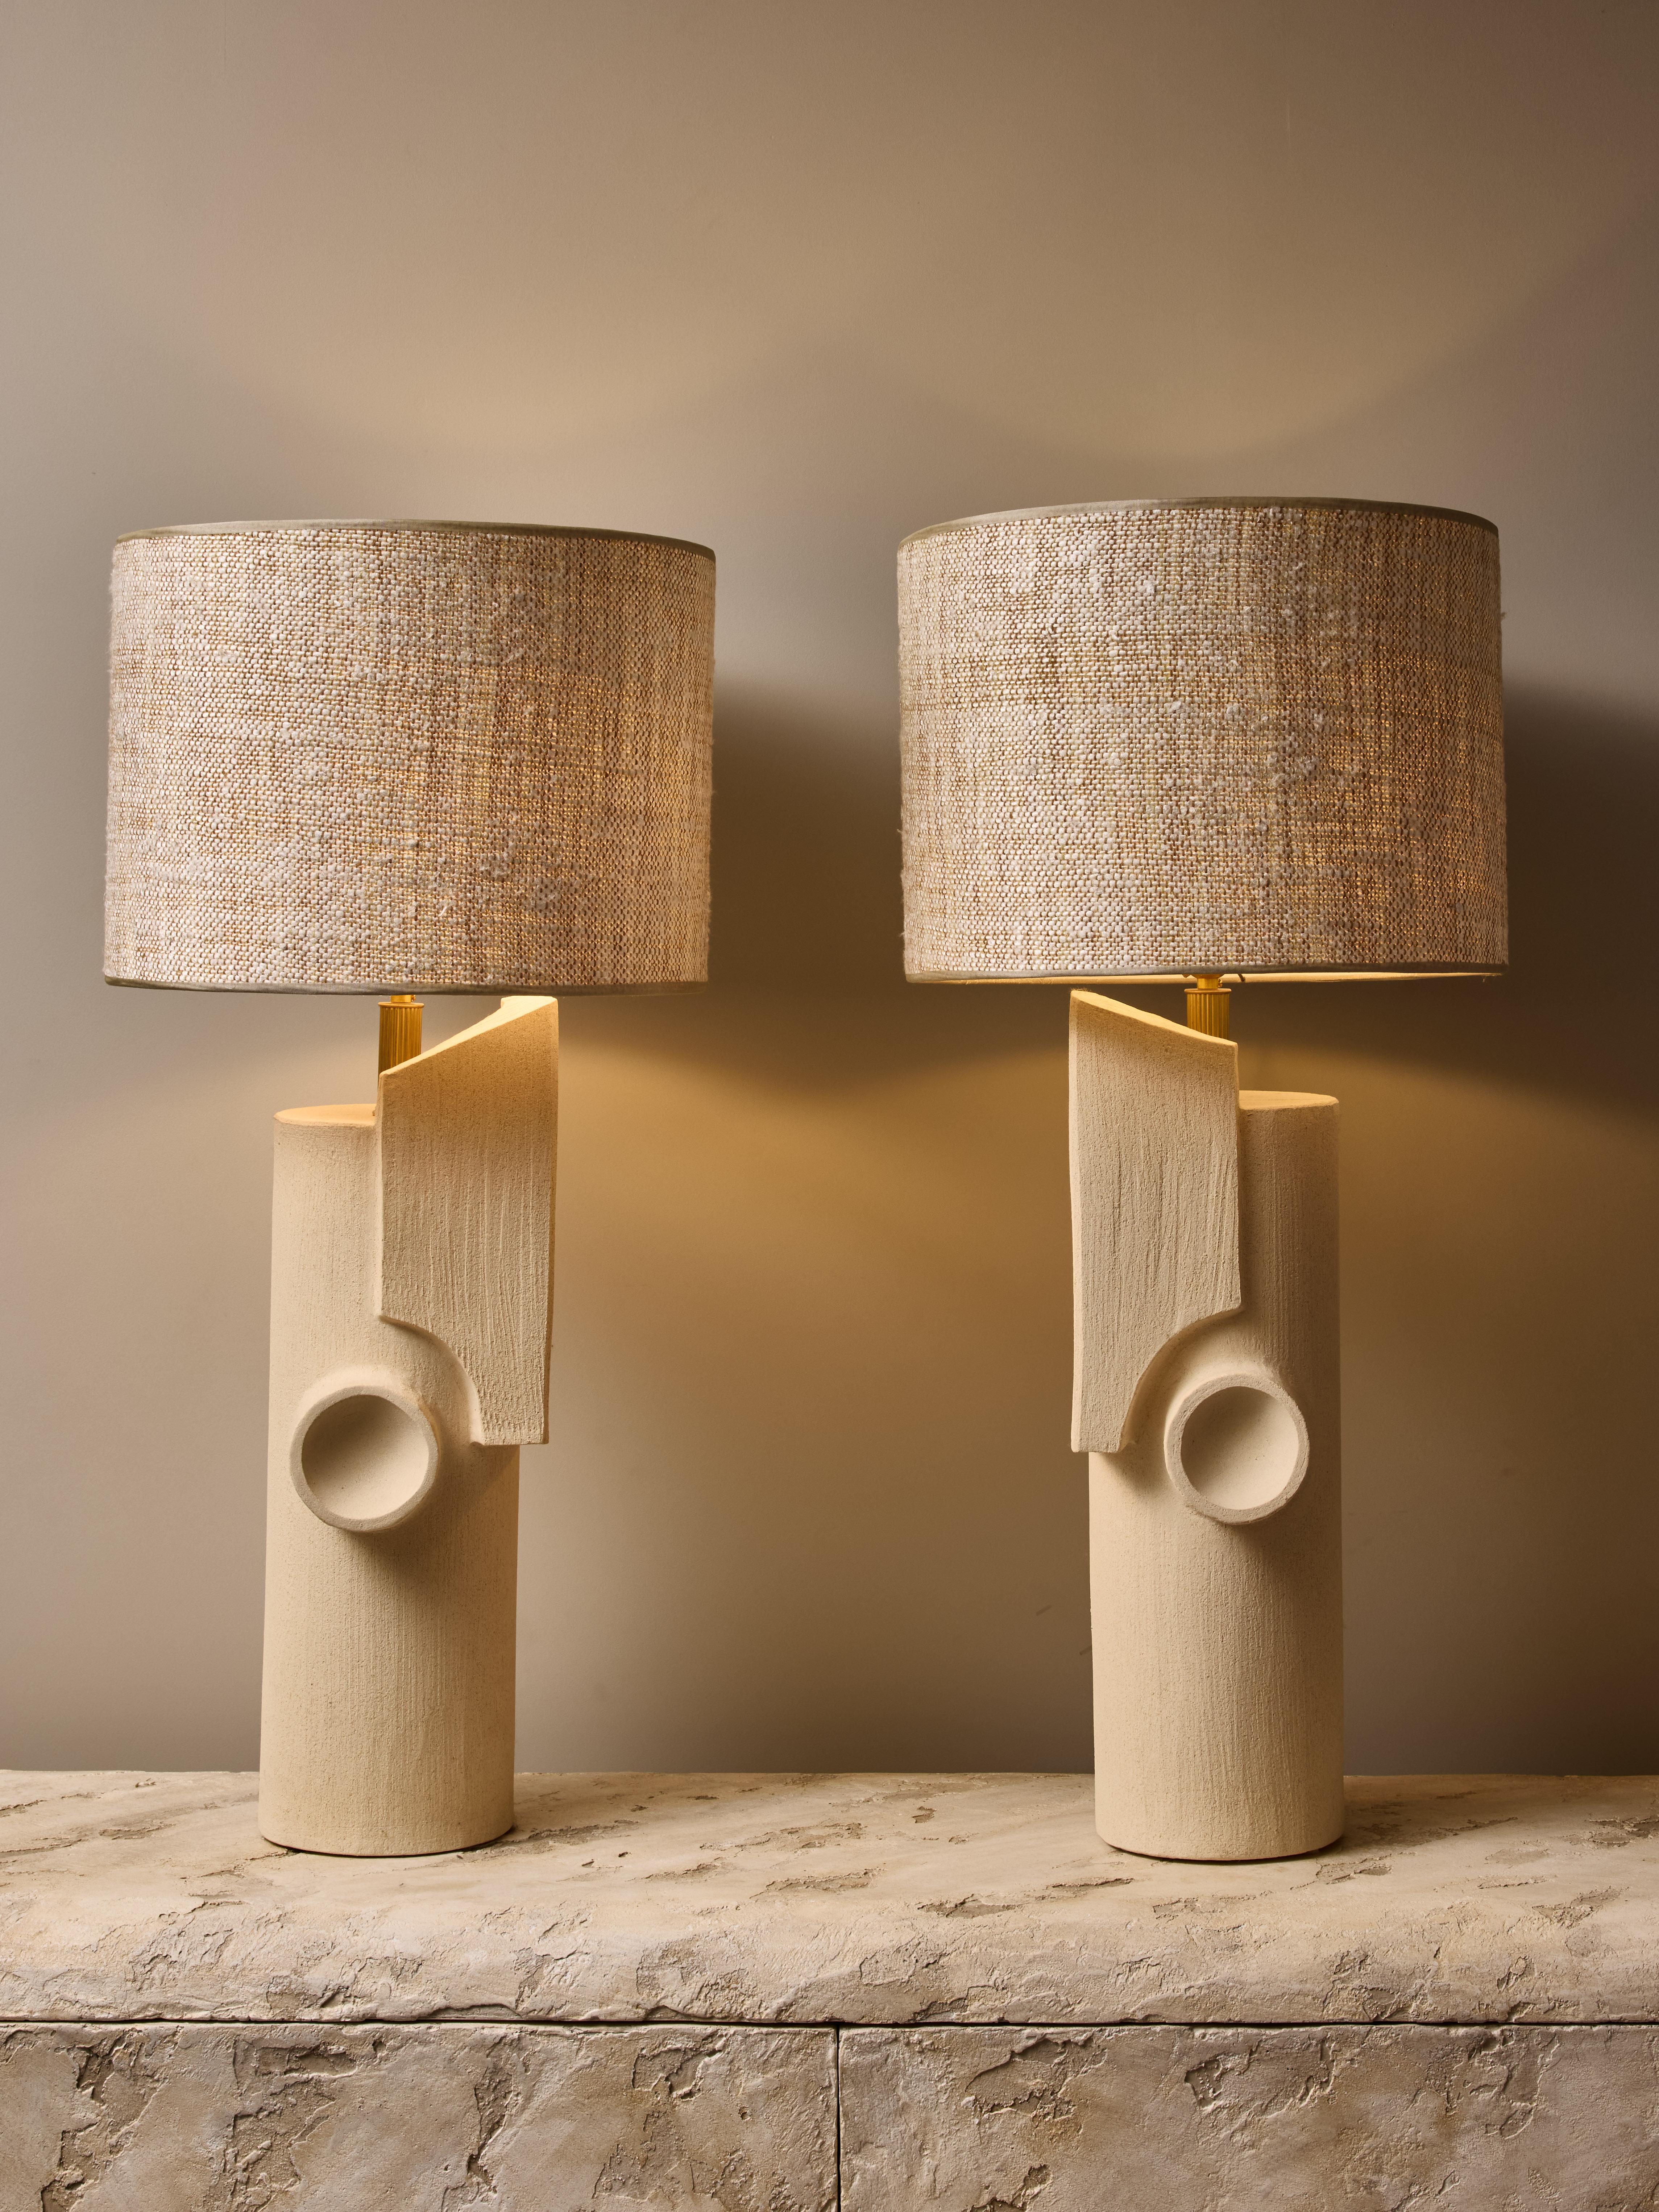 Ein Paar Keramik-Tischlampen von der talentierten französischen Künstlerin Olivia Cognet.

Diese großen röhrenförmigen Lampen haben ein gespiegeltes, fast buchartiges Design mit scharfen geometrischen Formen, Messingbeschläge und einen